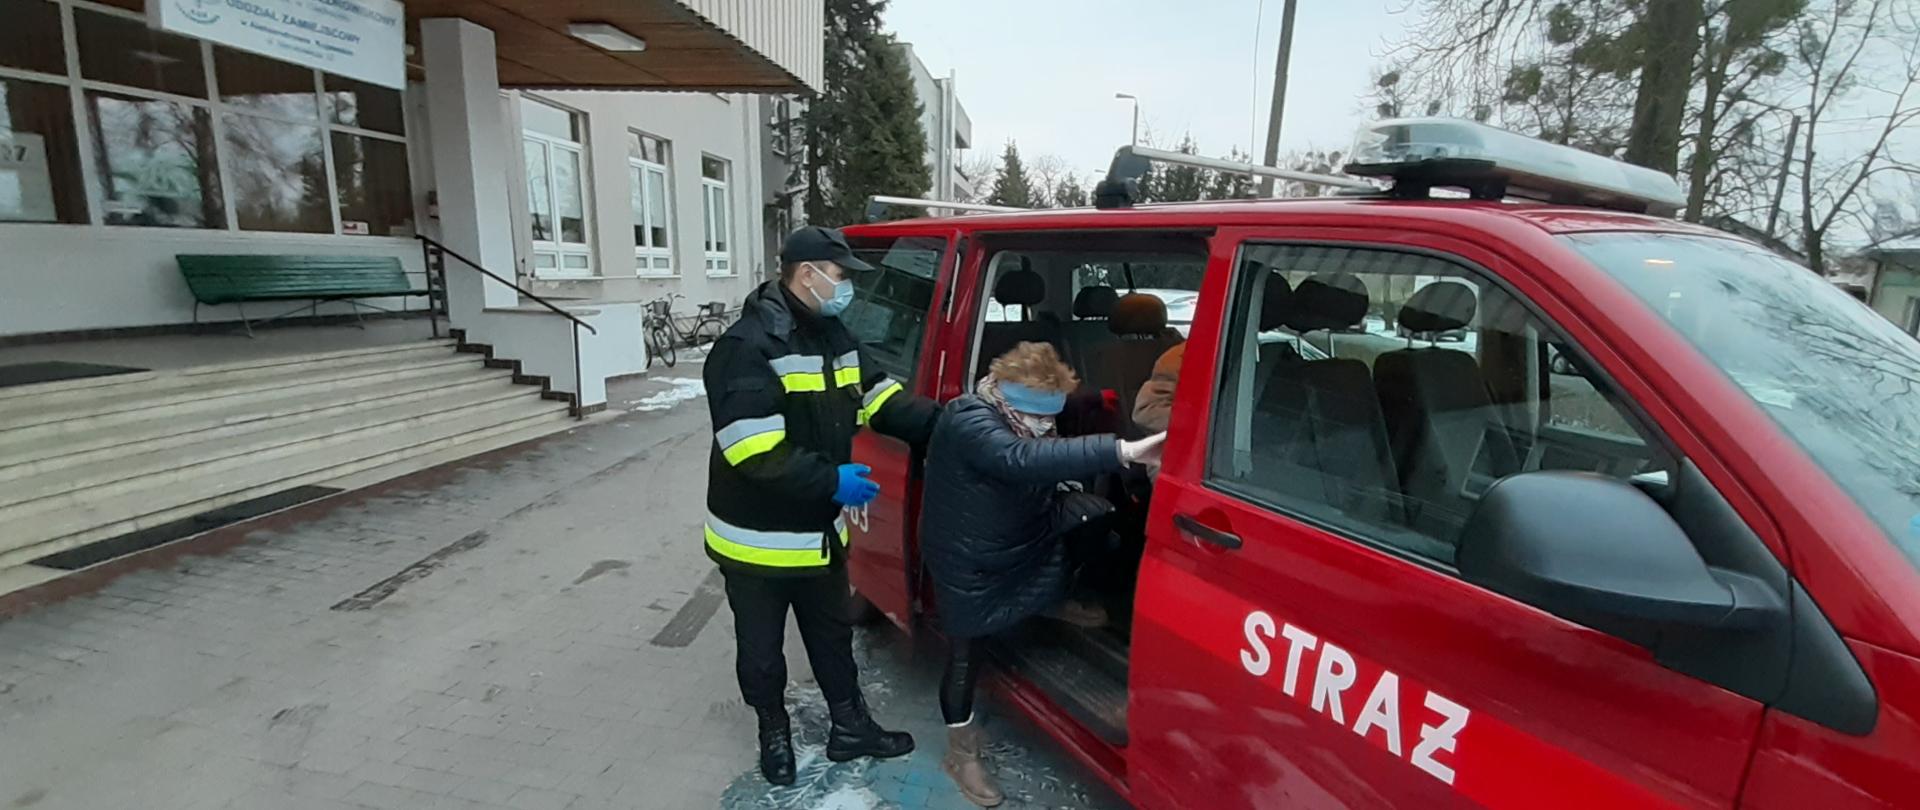 Na zdjęciu strażak pomaga wsiąść starszej kobiecie do strażackiego busa.